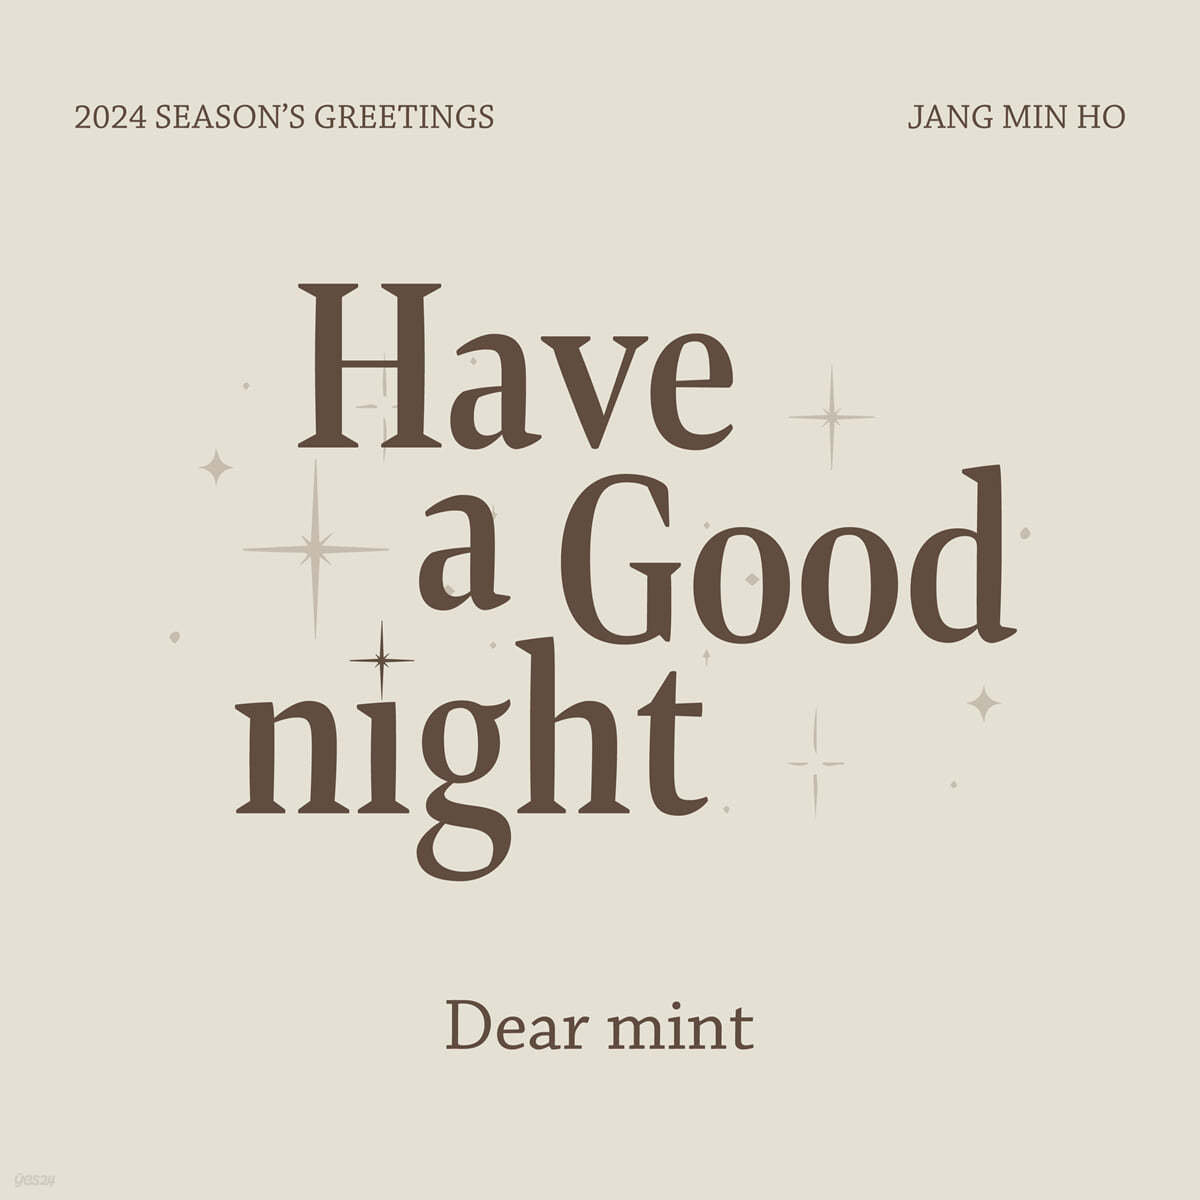 장민호 (JANG MINHO) 2024 SEASON’S GREETINGS [Have a Good night]